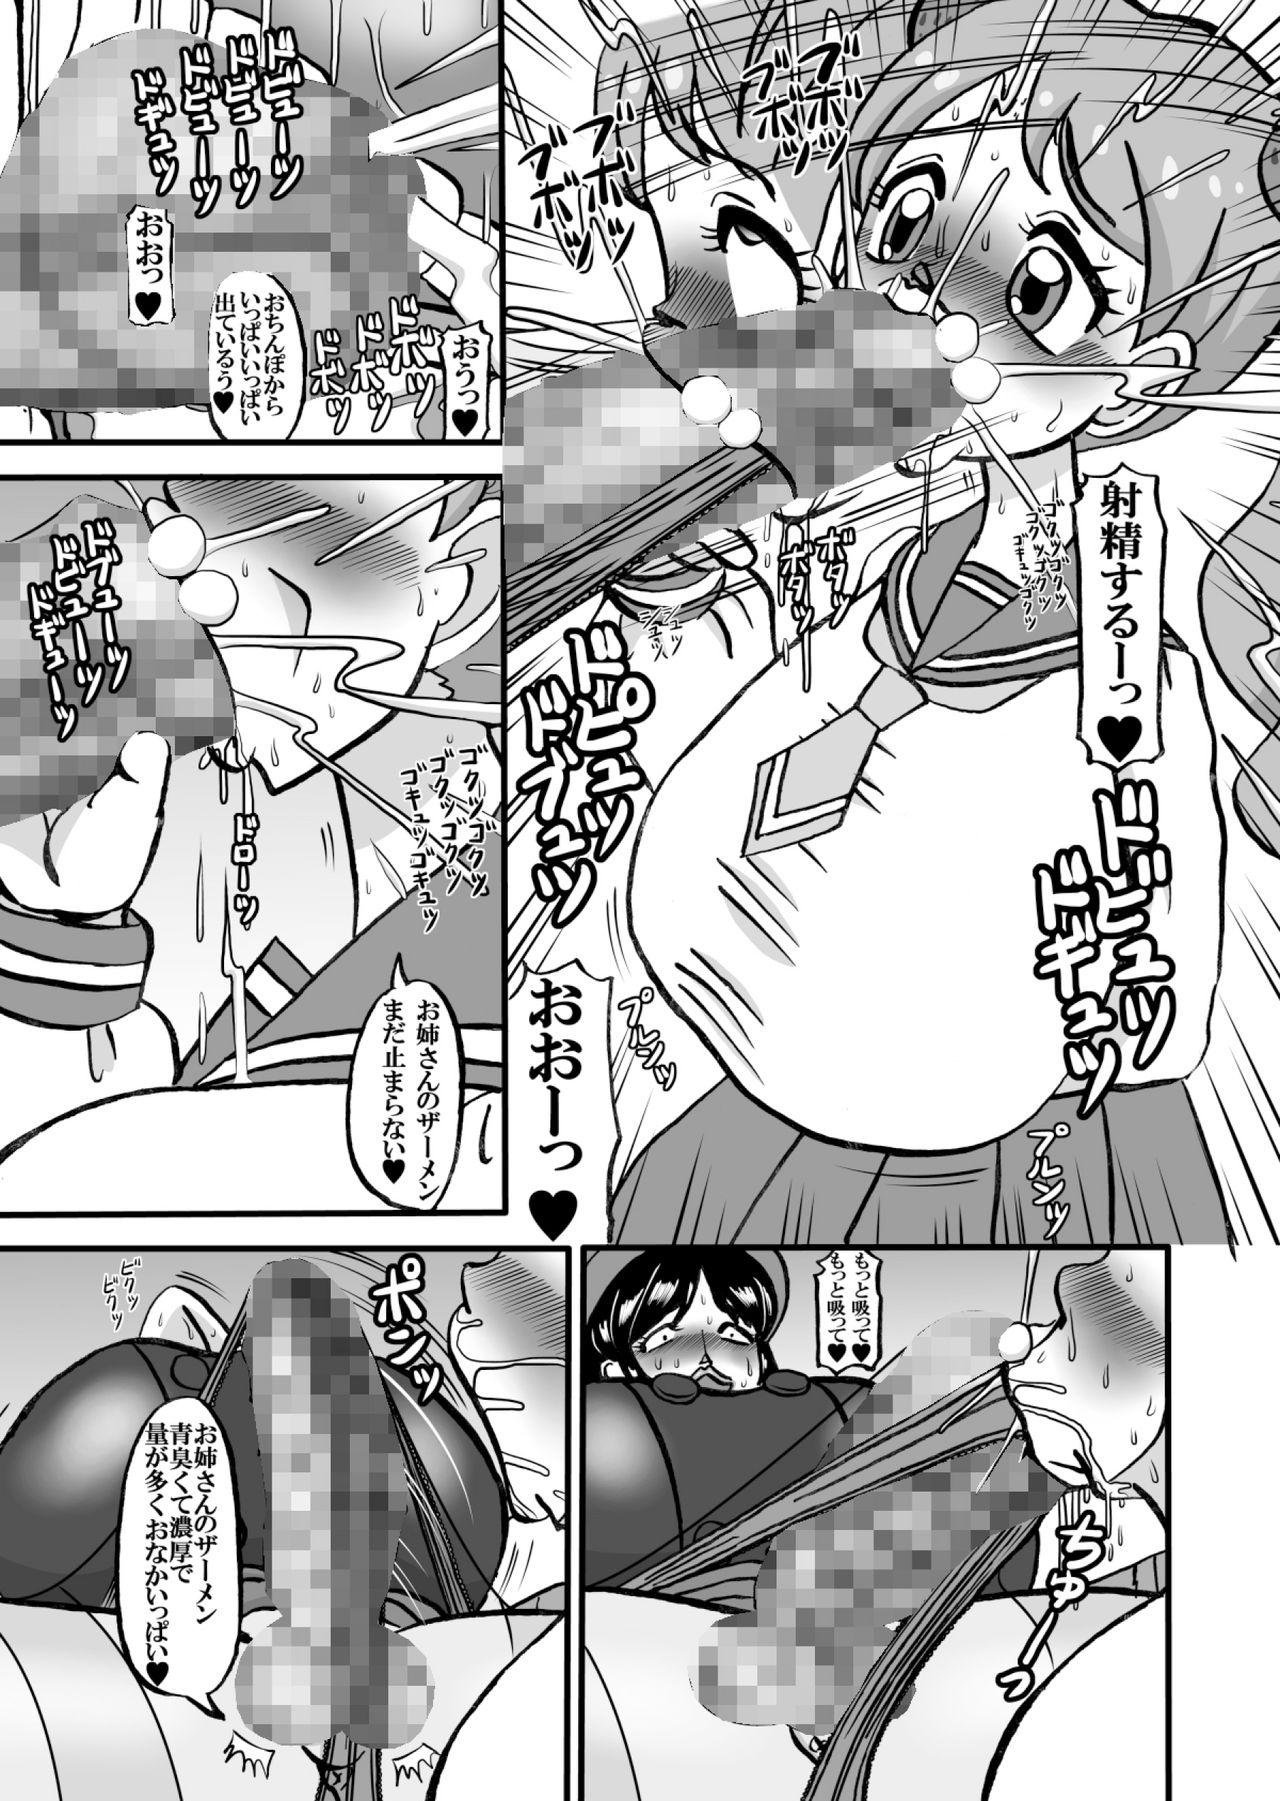 Grosso Sweetie Girls 18 - Kirakira precure a la mode Slutty - Page 7